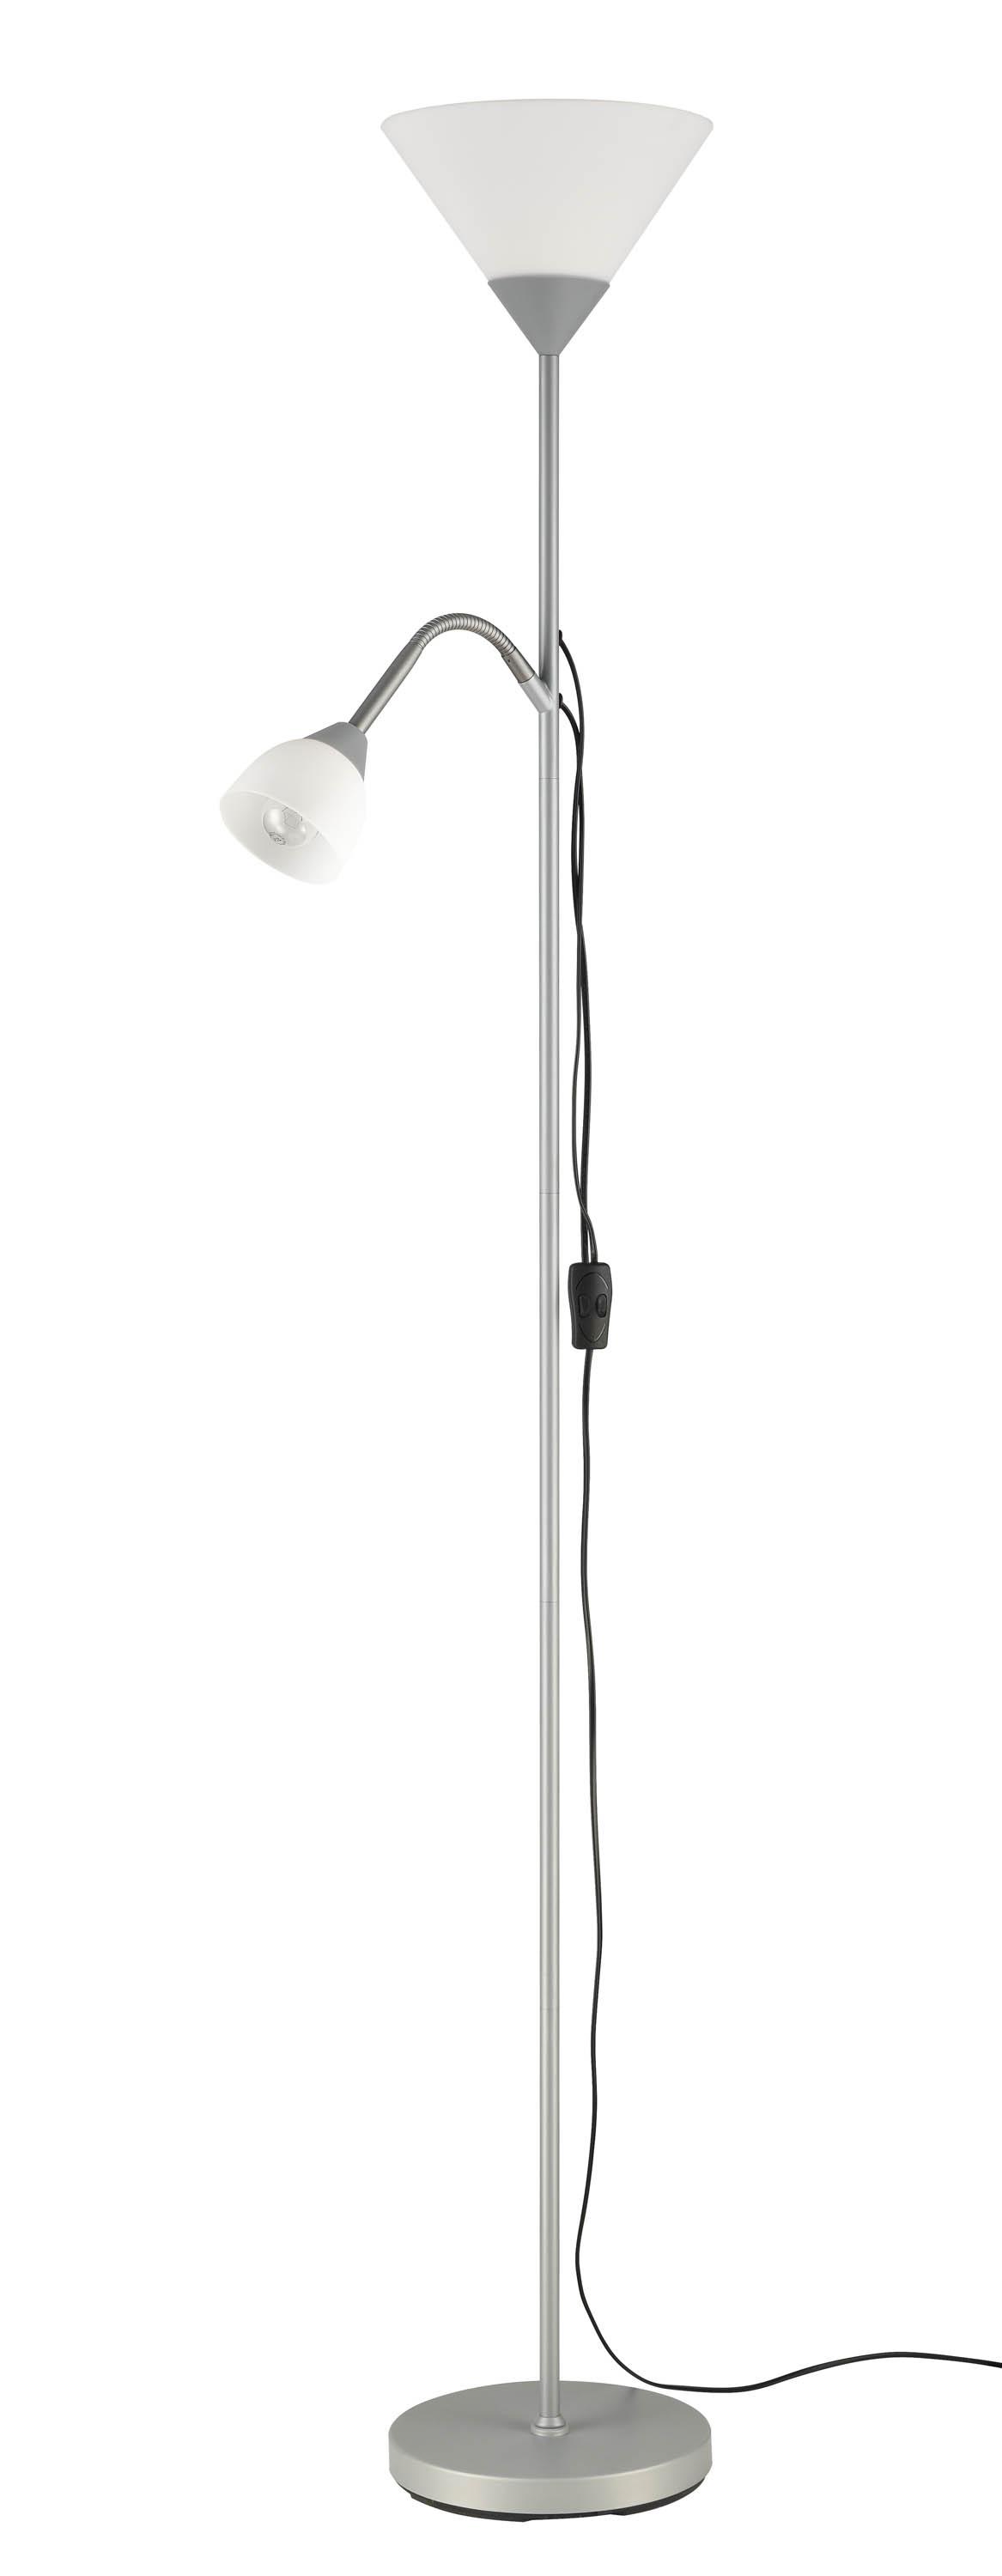 Stehlampe Doris Silber/Weiß mit Leselampe - Silberfarben/Weiß, KONVENTIONELL, Kunststoff/Metall (180cm) - Homezone